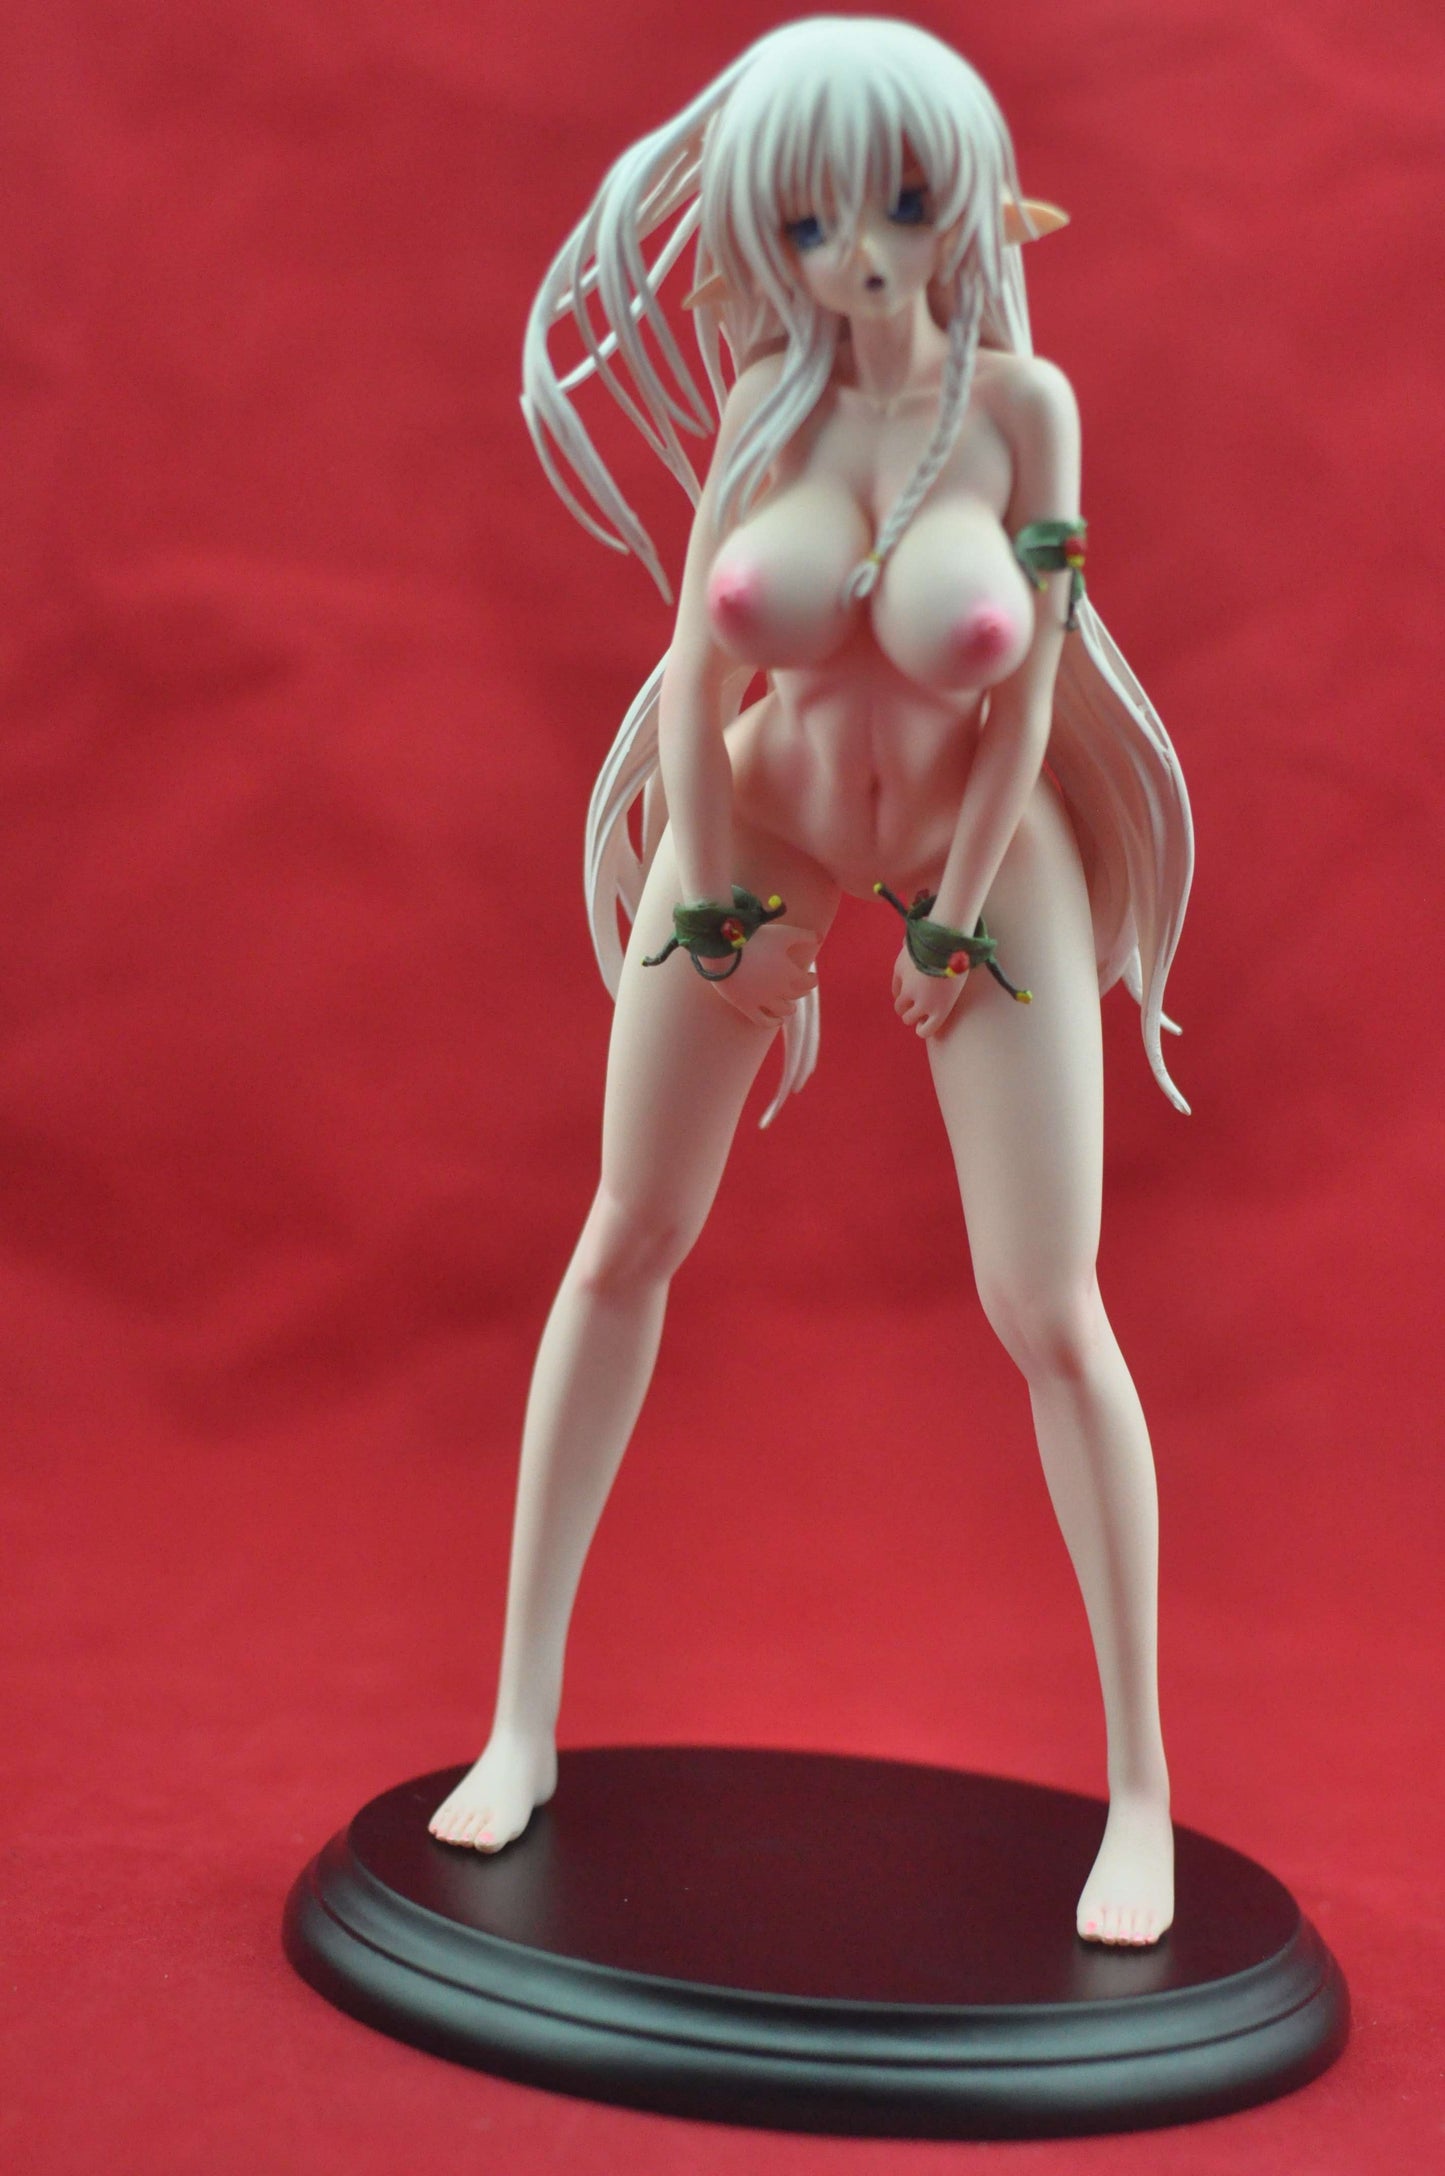 Queen's Blade Alleyne 1/6 nude anime figure